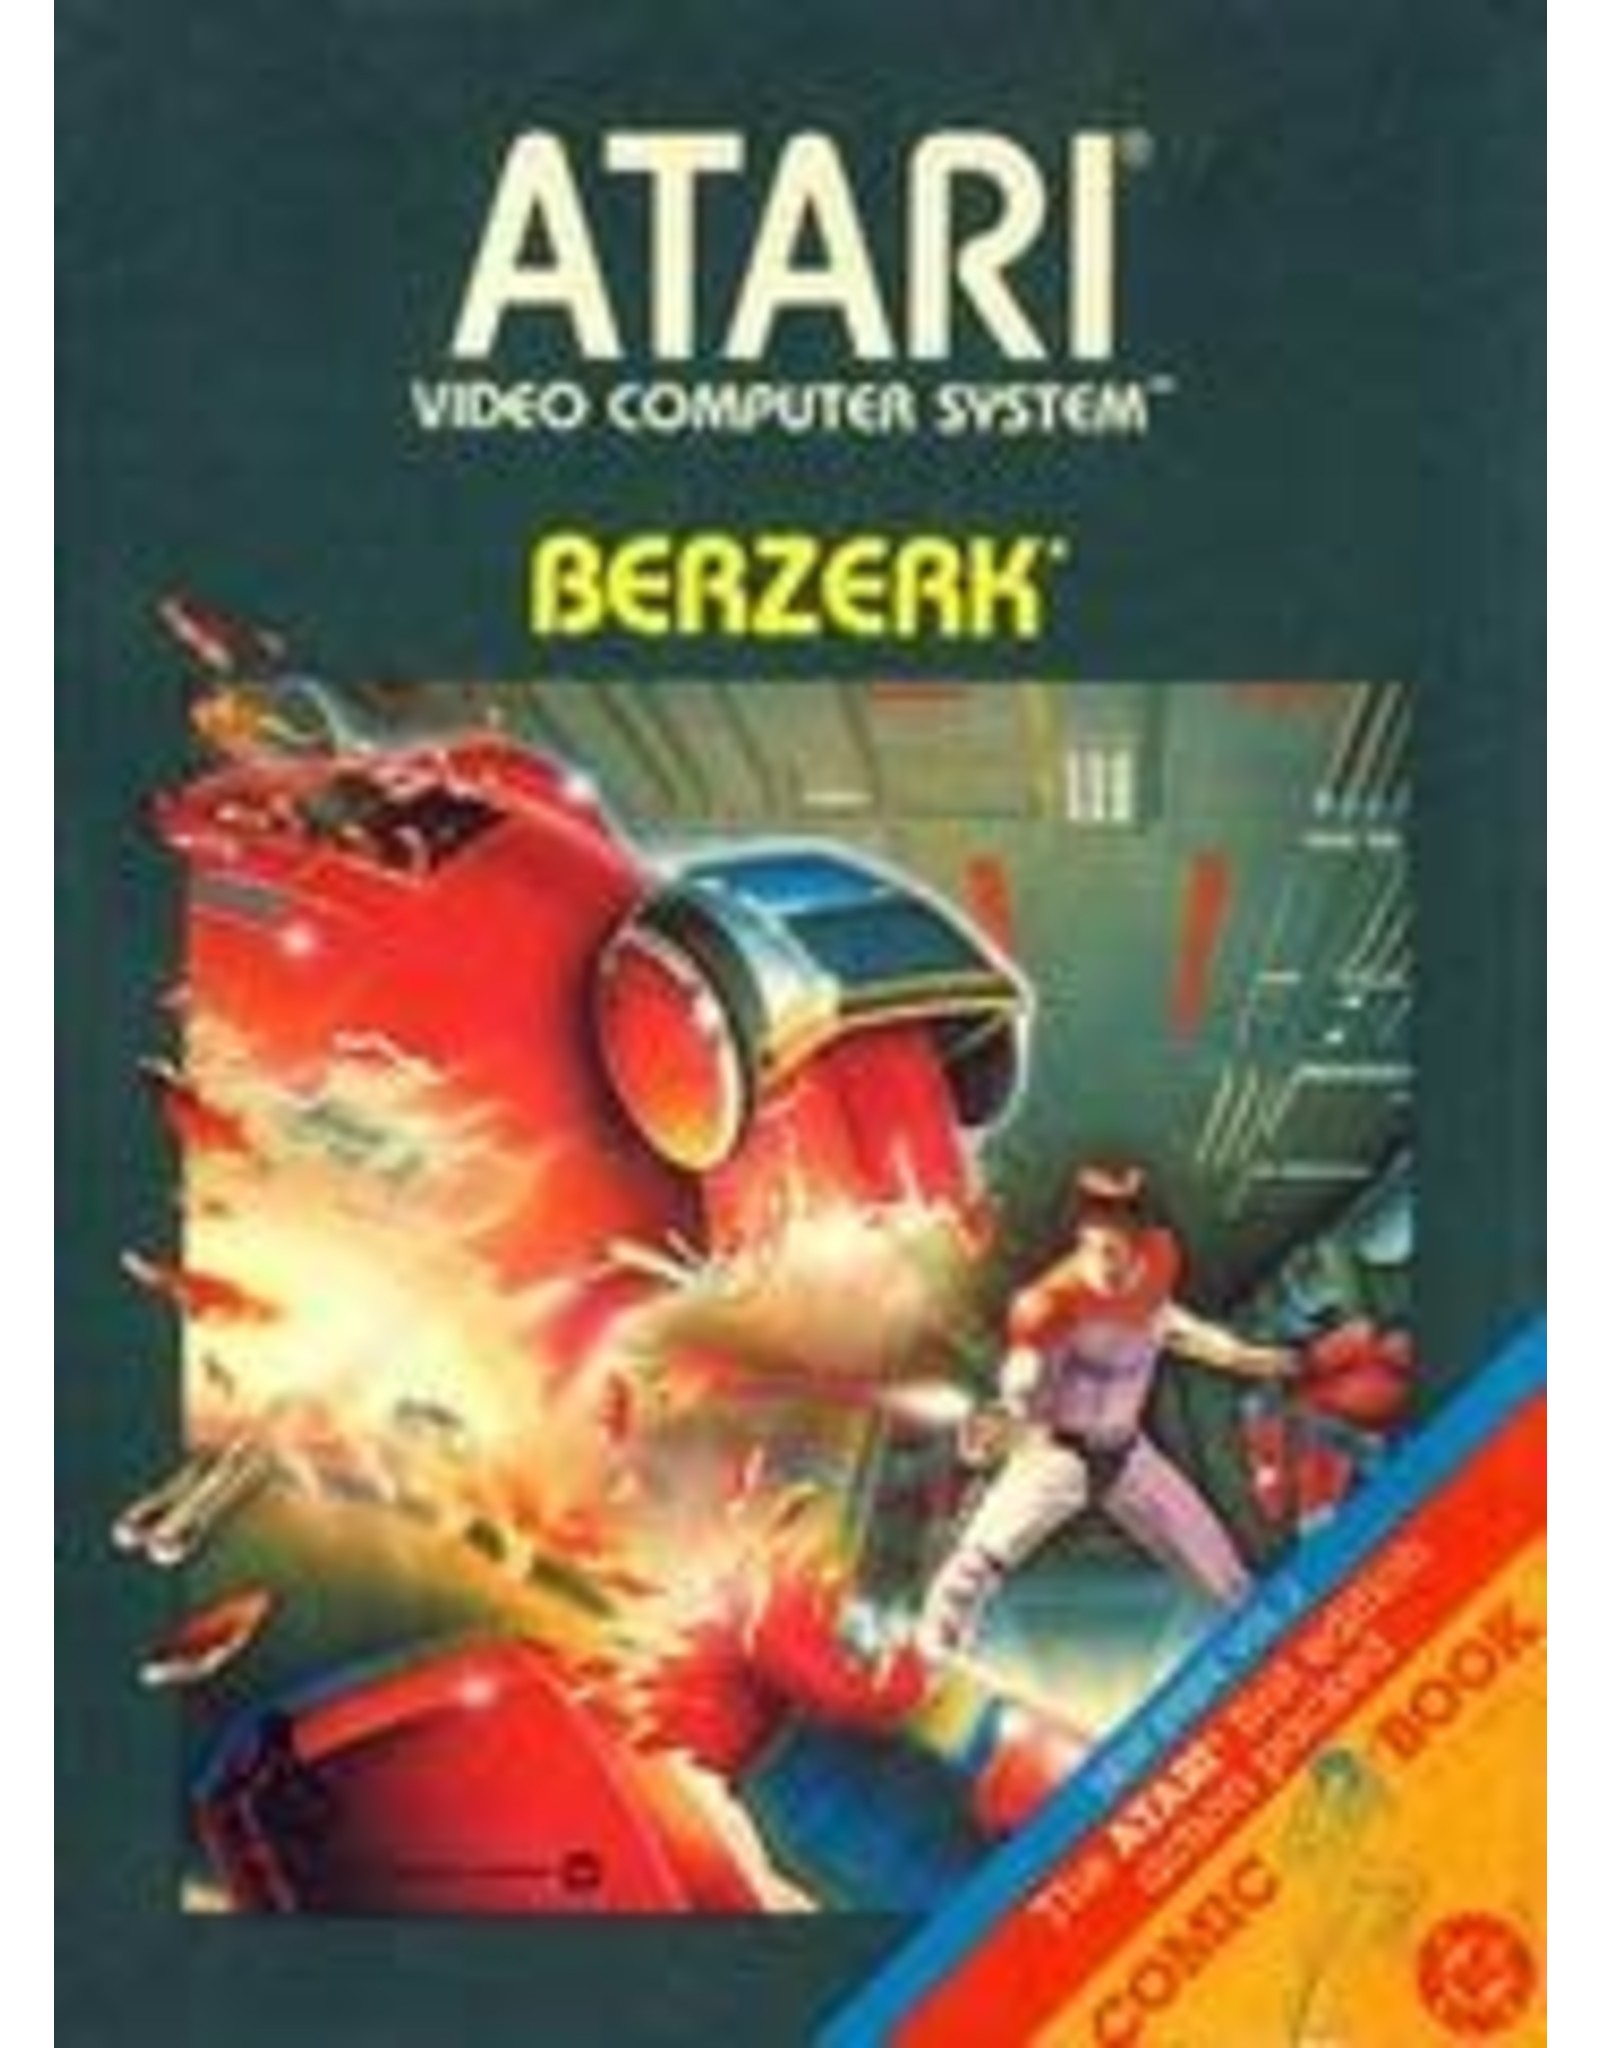 Atari Berzerk (Used, Cart Only, Cosmetic Damage)